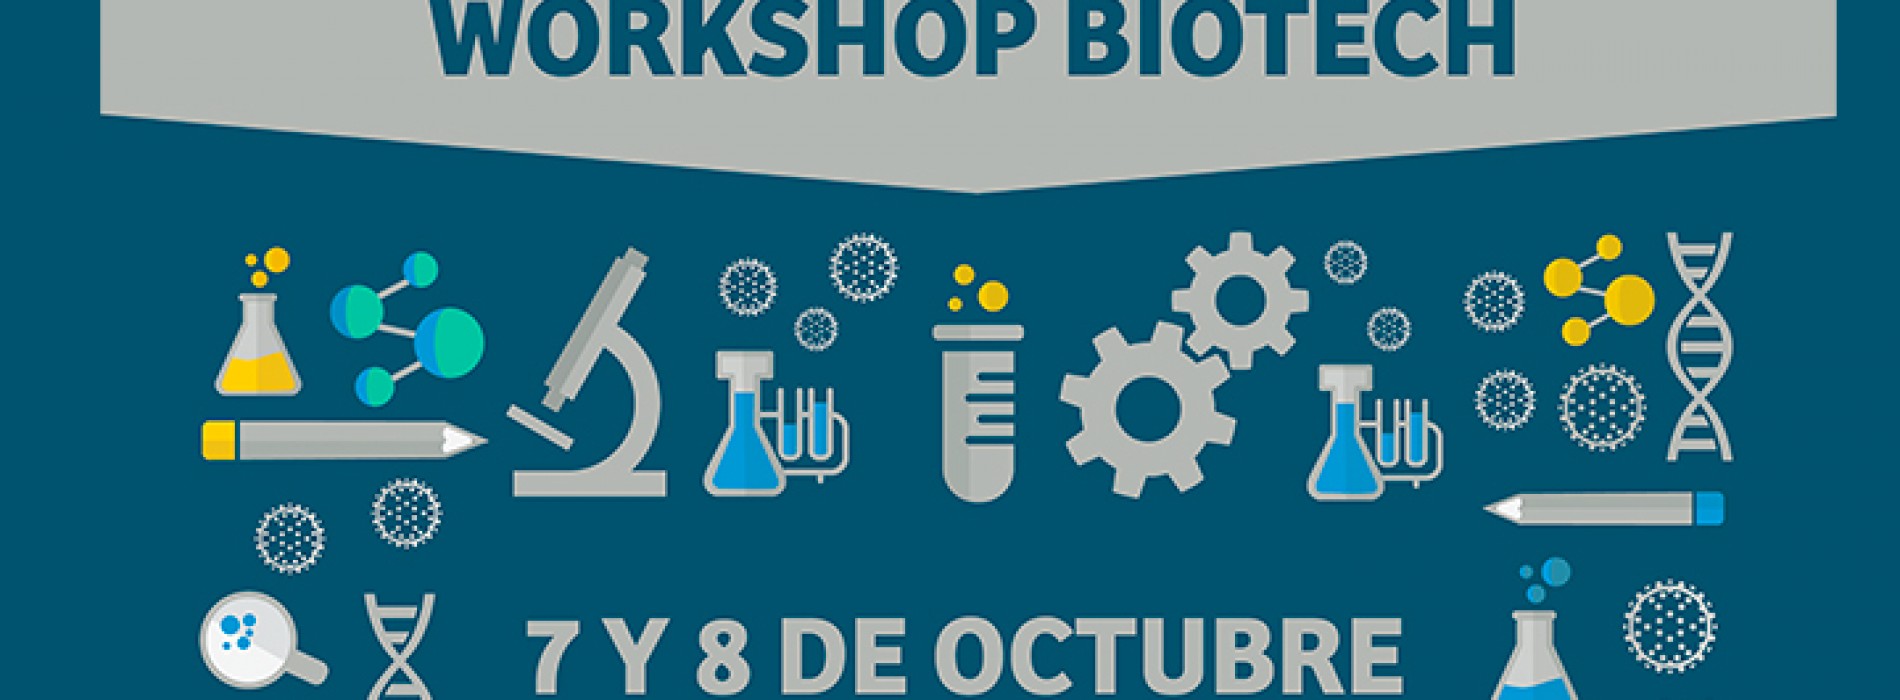 WORKSHOP BIOTECH, 7 y 8 de Octubre, Facultad de Ciencias U. de Chile